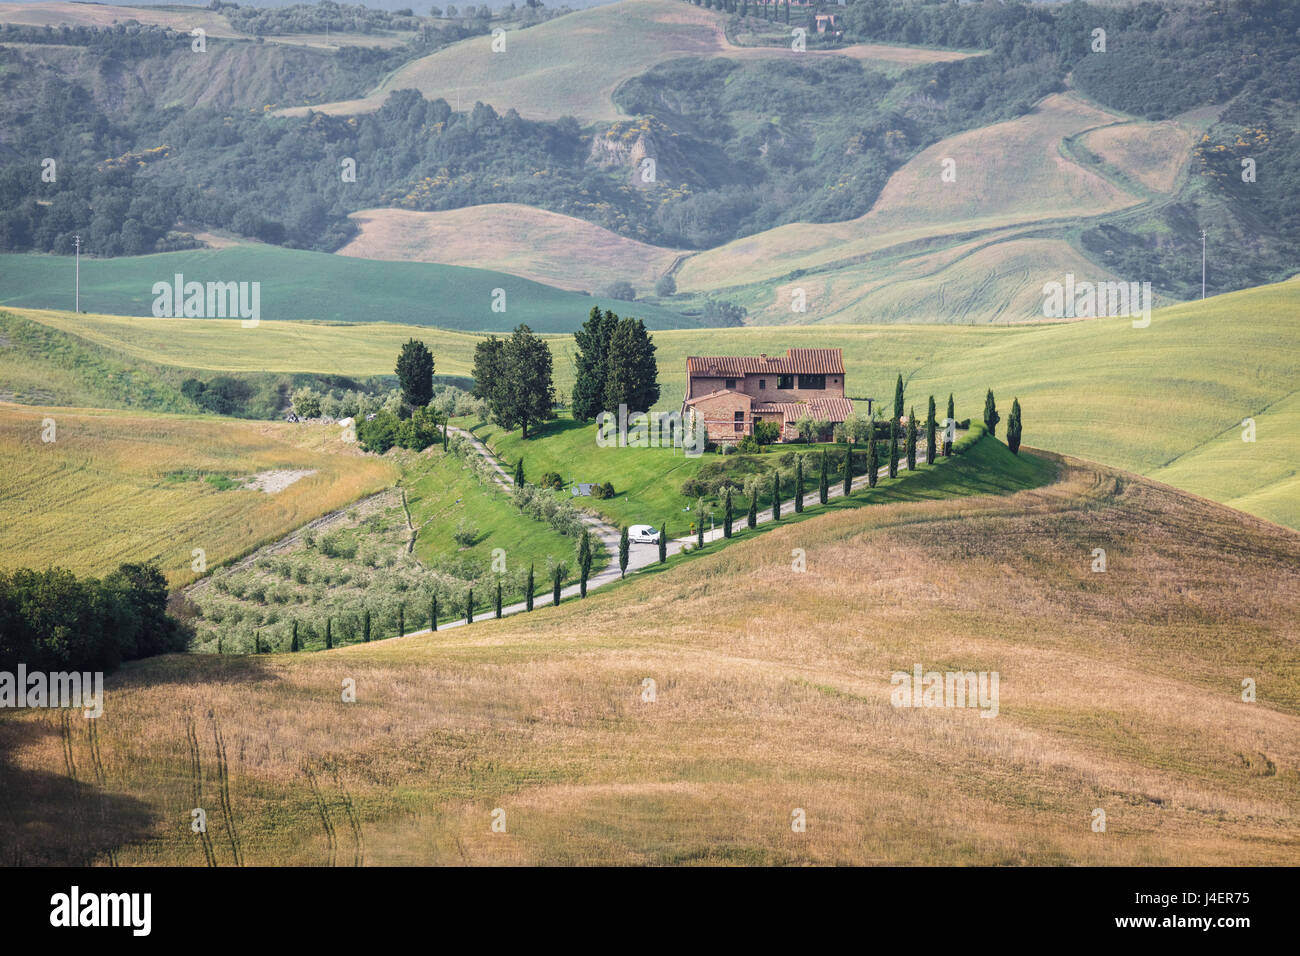 Grün, sanfte Hügel und Bauernhäuser der Crete Senesi (Senese Tonen), Provinz Siena, Toskana, Italien, Europa Stockfoto